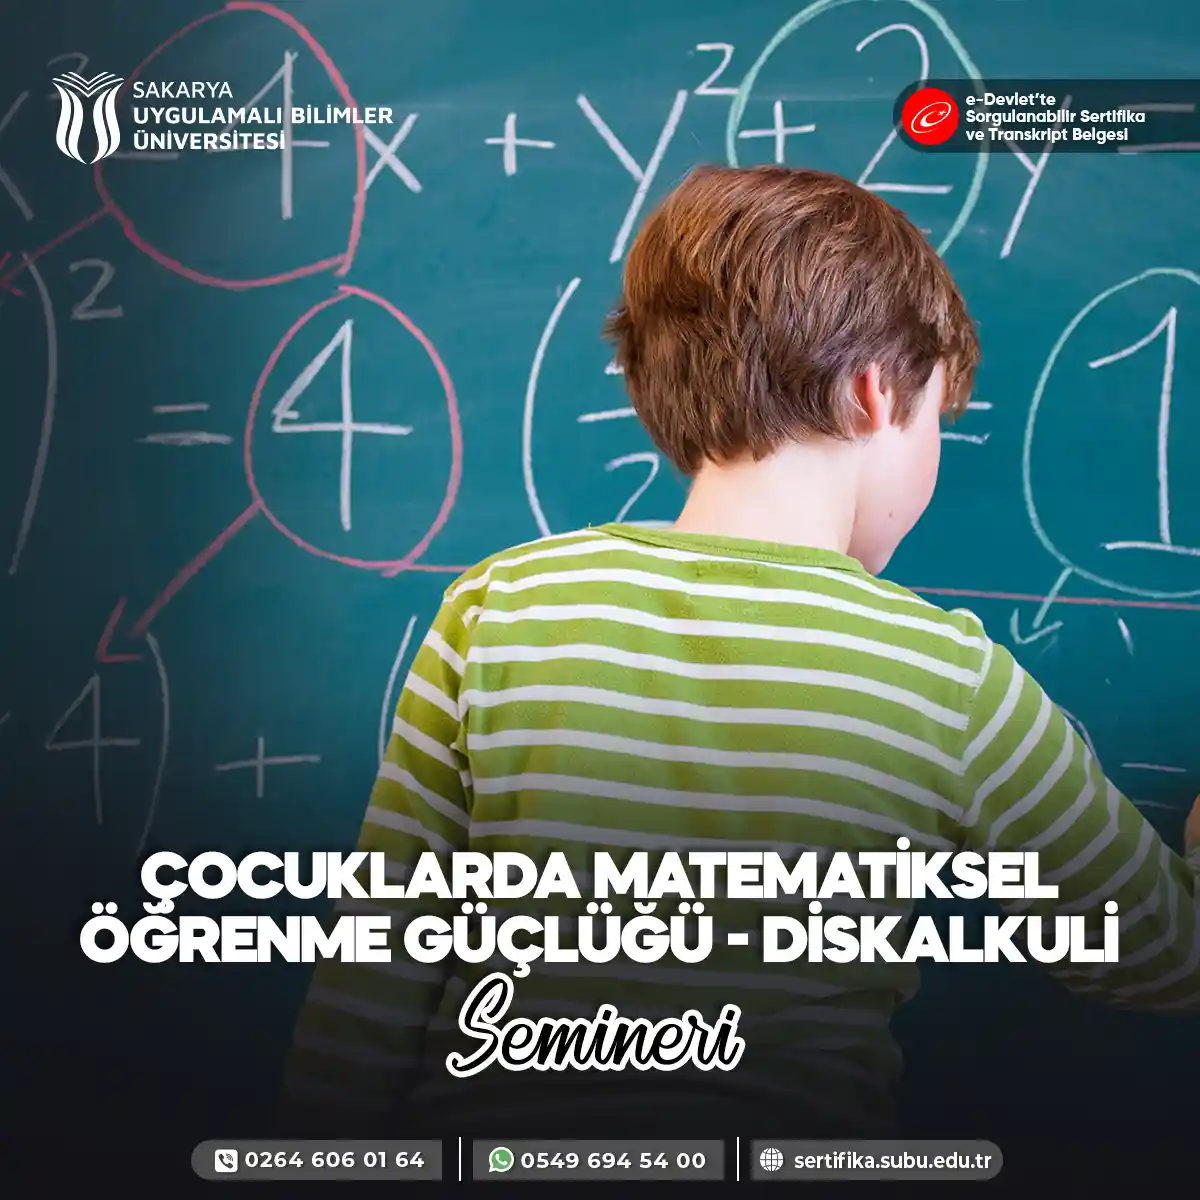 Çocuklarda Matematiksel Öğrenme Güçlüğü - Diskalkuli Semineri